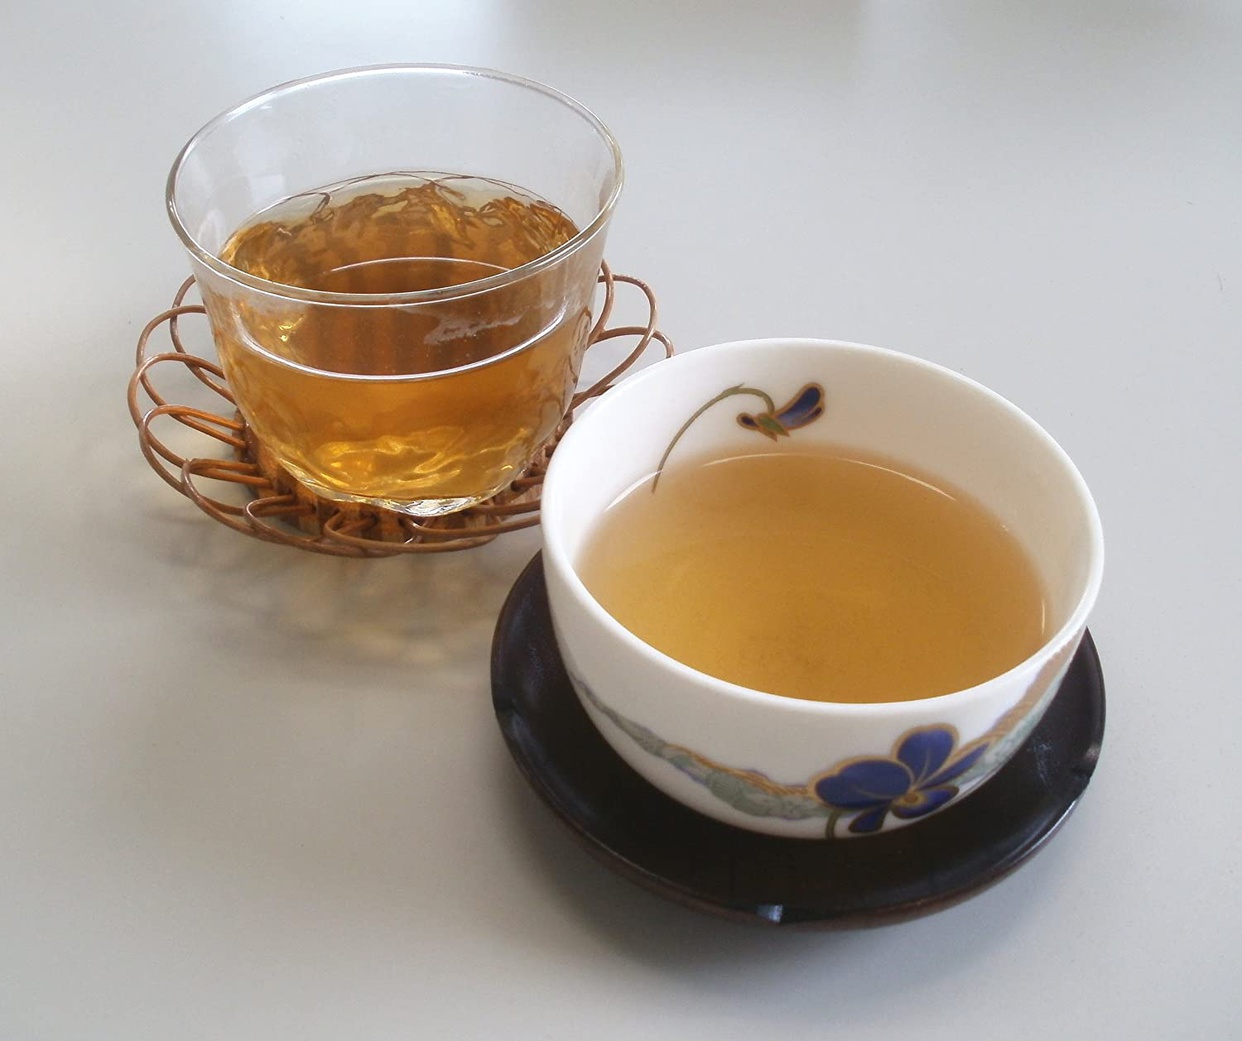 おらが村の健康茶 スギナ茶の口コミ・評判一覧 2件のスギナ茶レビュー モノシル